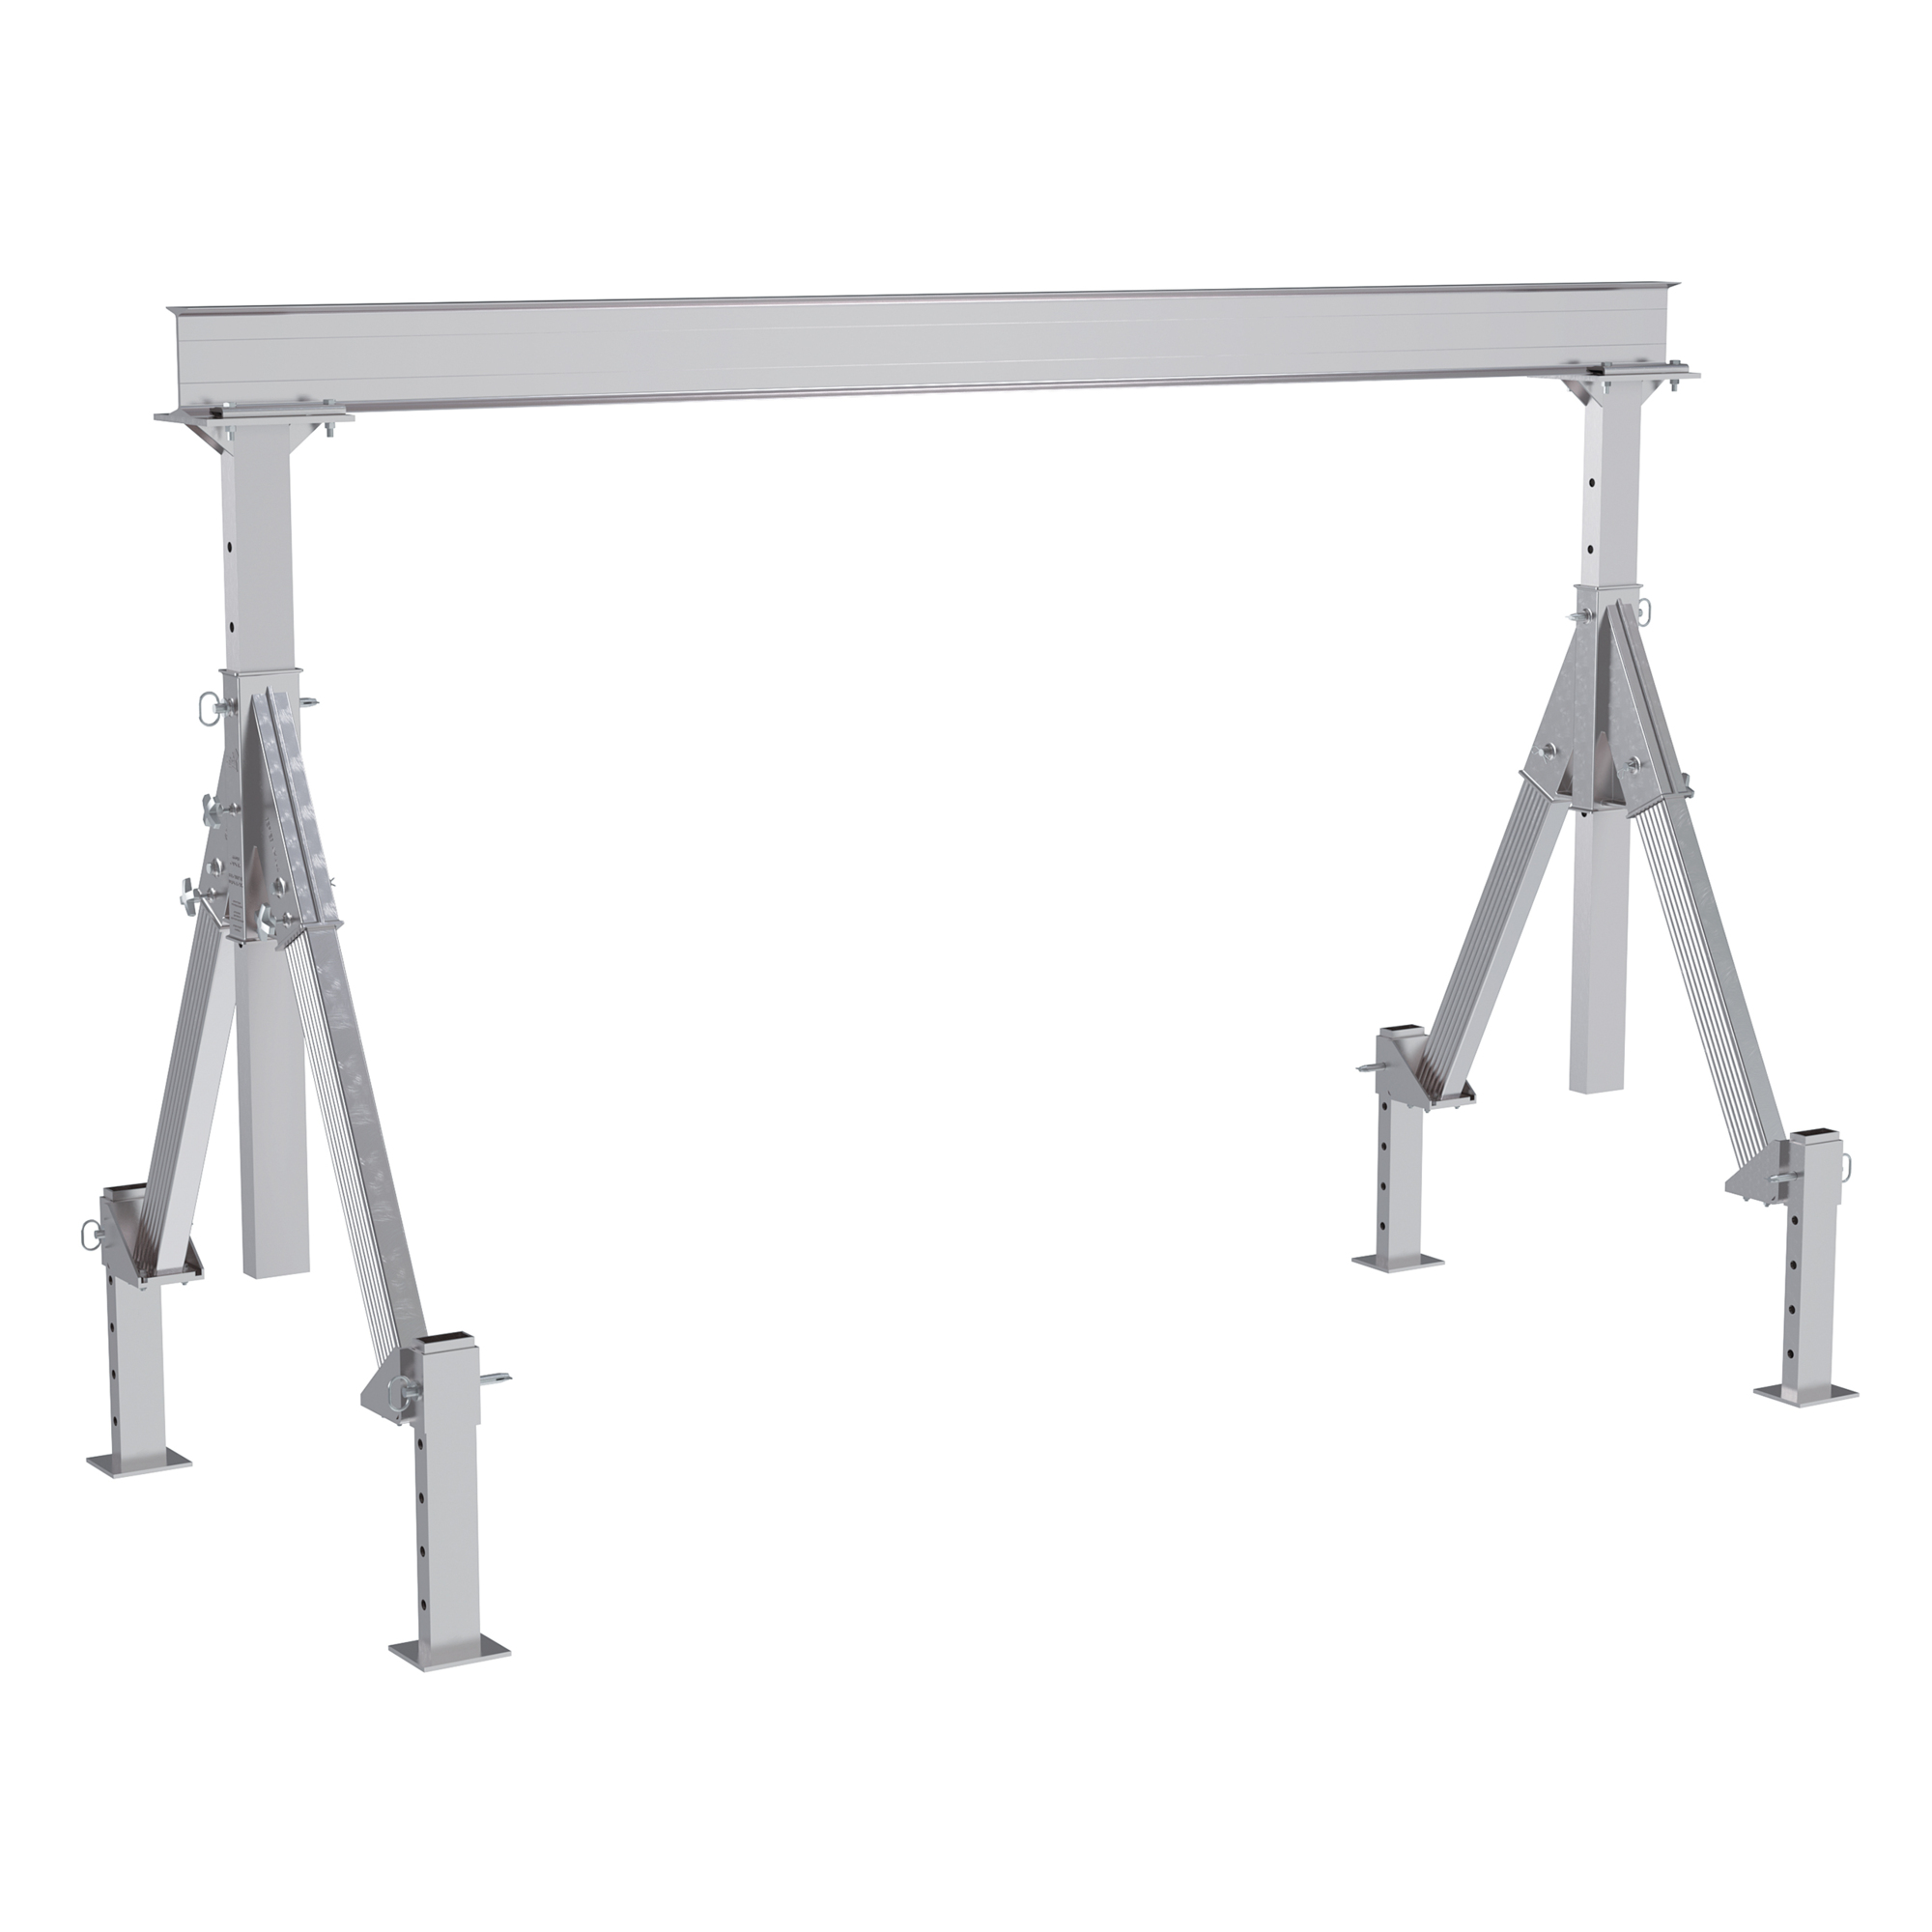 Vestil, Adjustable height aluminum crane 12ft. x 8ft., Load Capacity 4000 lb, Model AHA-4-12-8-ALO